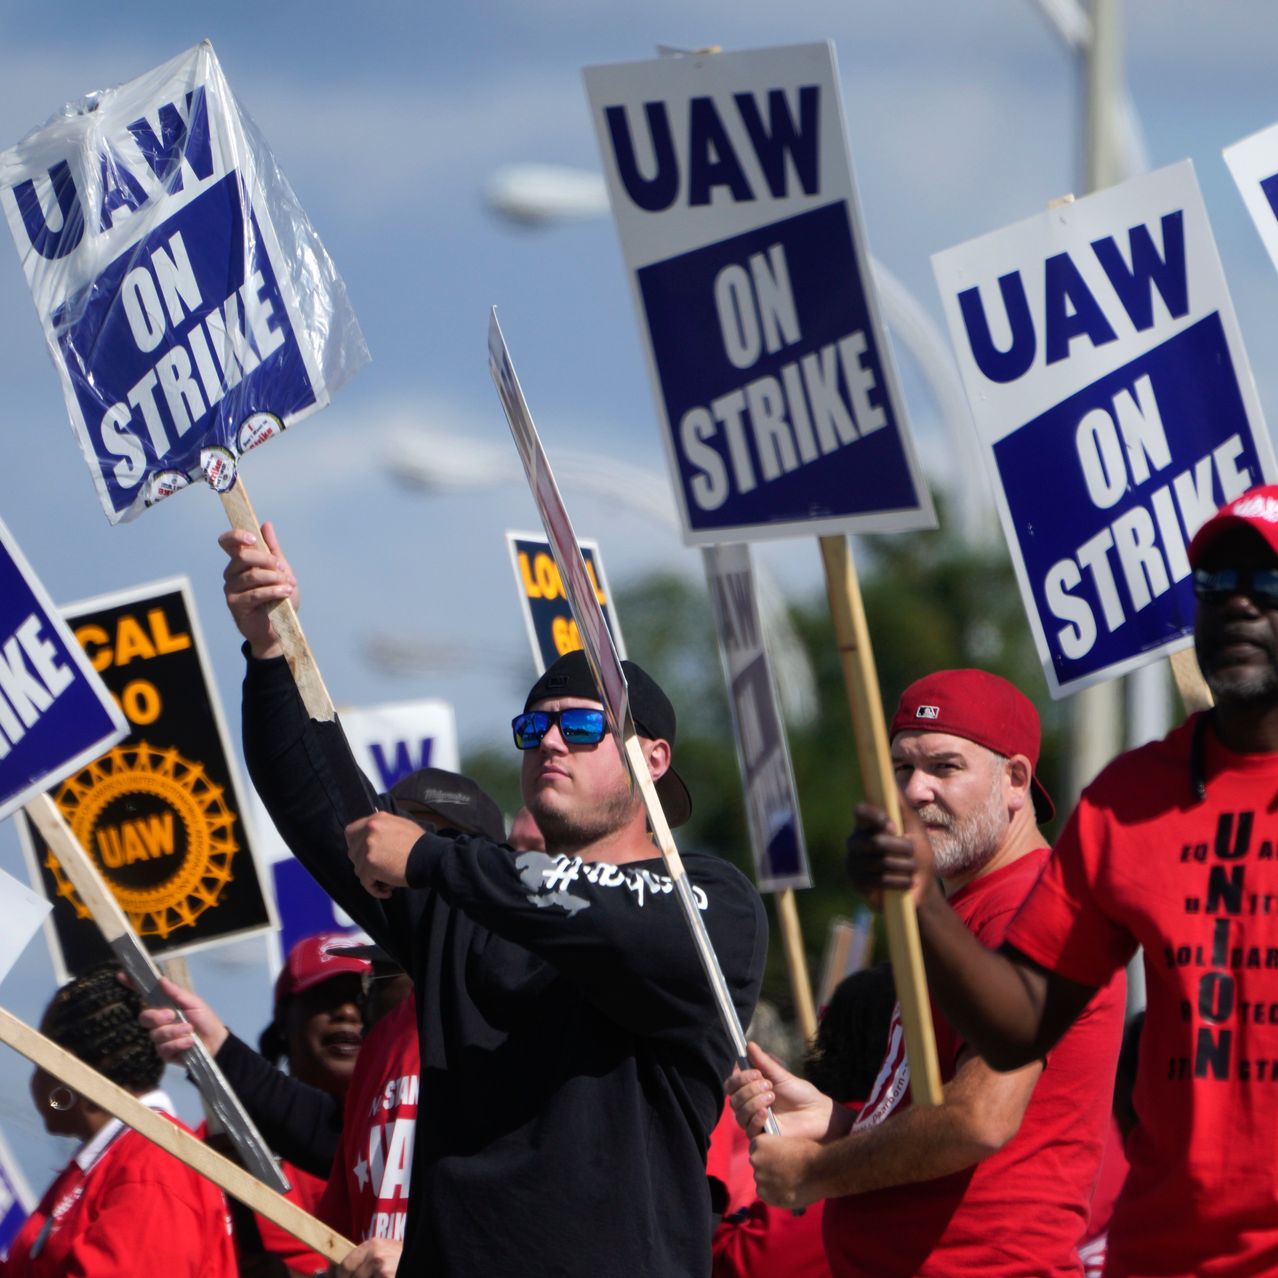 Sindicato e sindicalistas em ação/Foto: @UAW